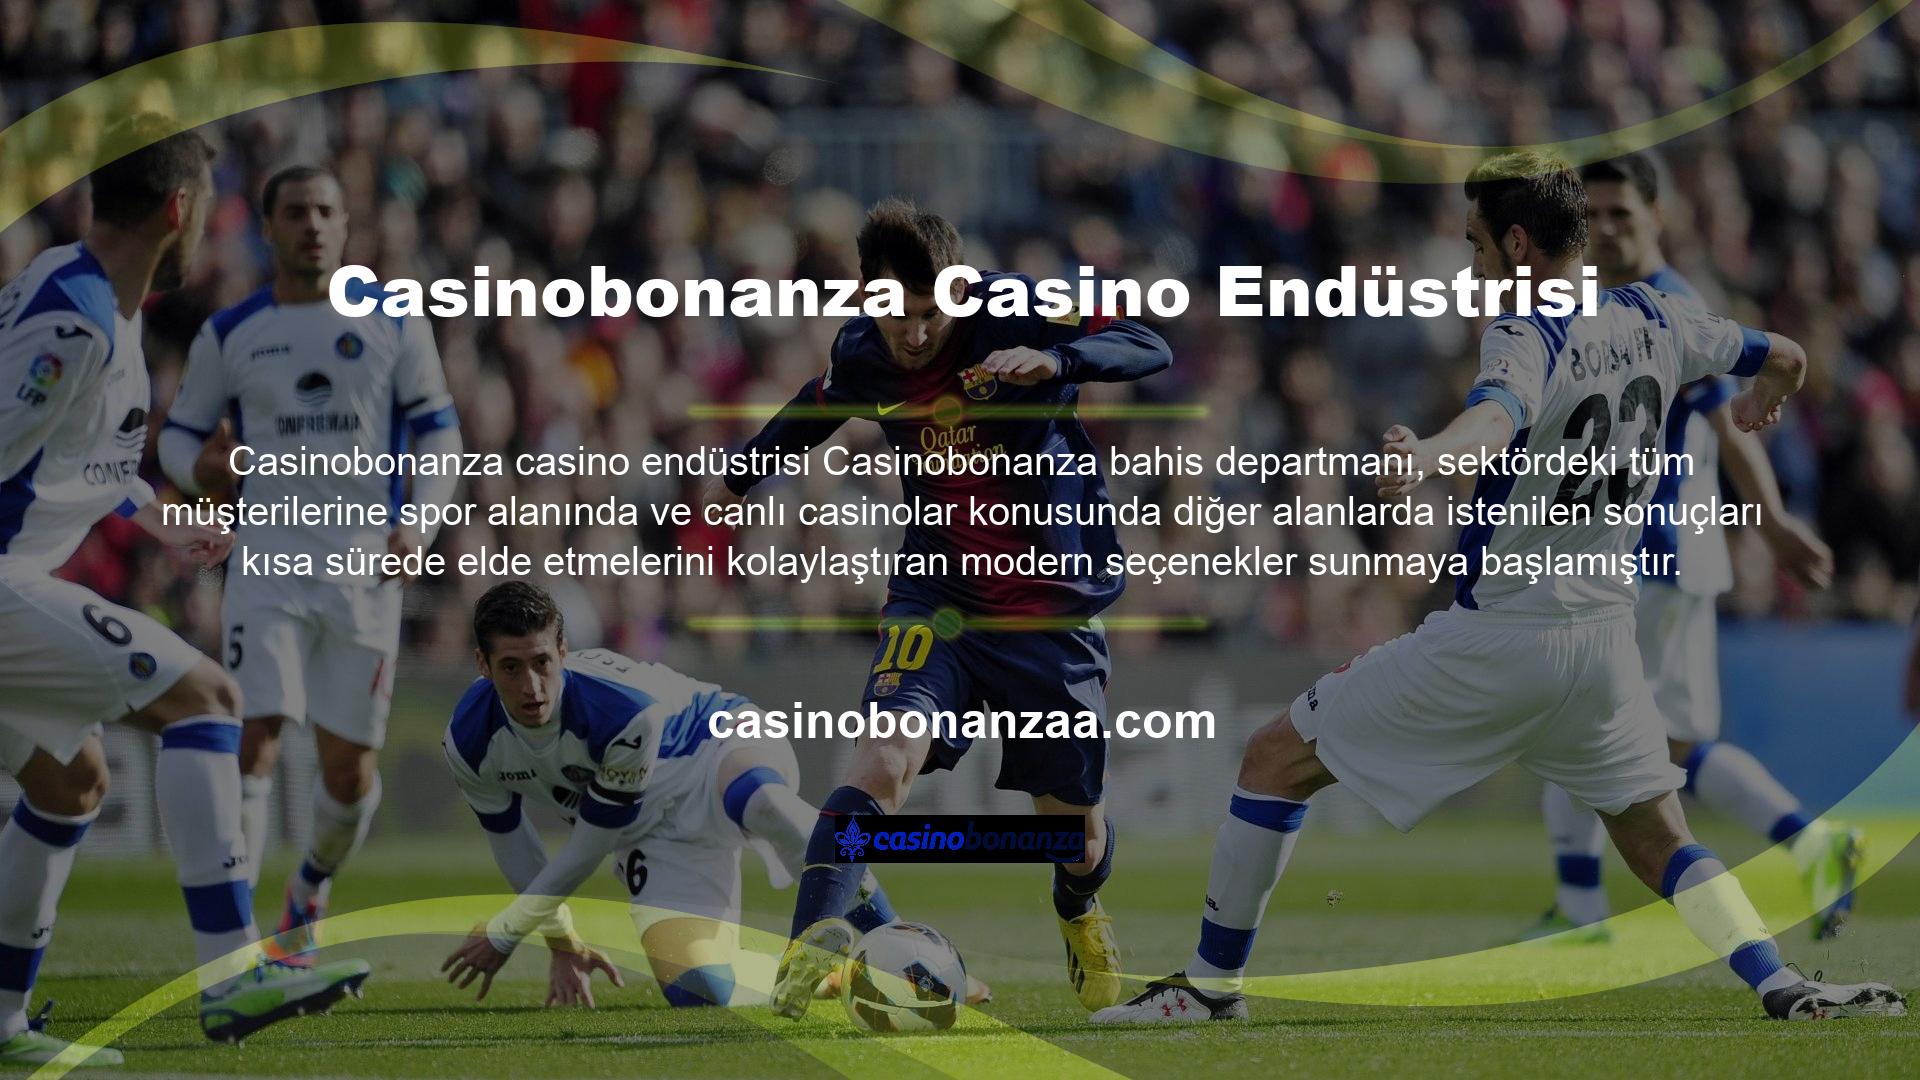 Artık Casinobonanza spor bahisleri, canlı casino oyunları ve modern kurumsal seçenekler sayesinde herkese ulaşmak mümkün